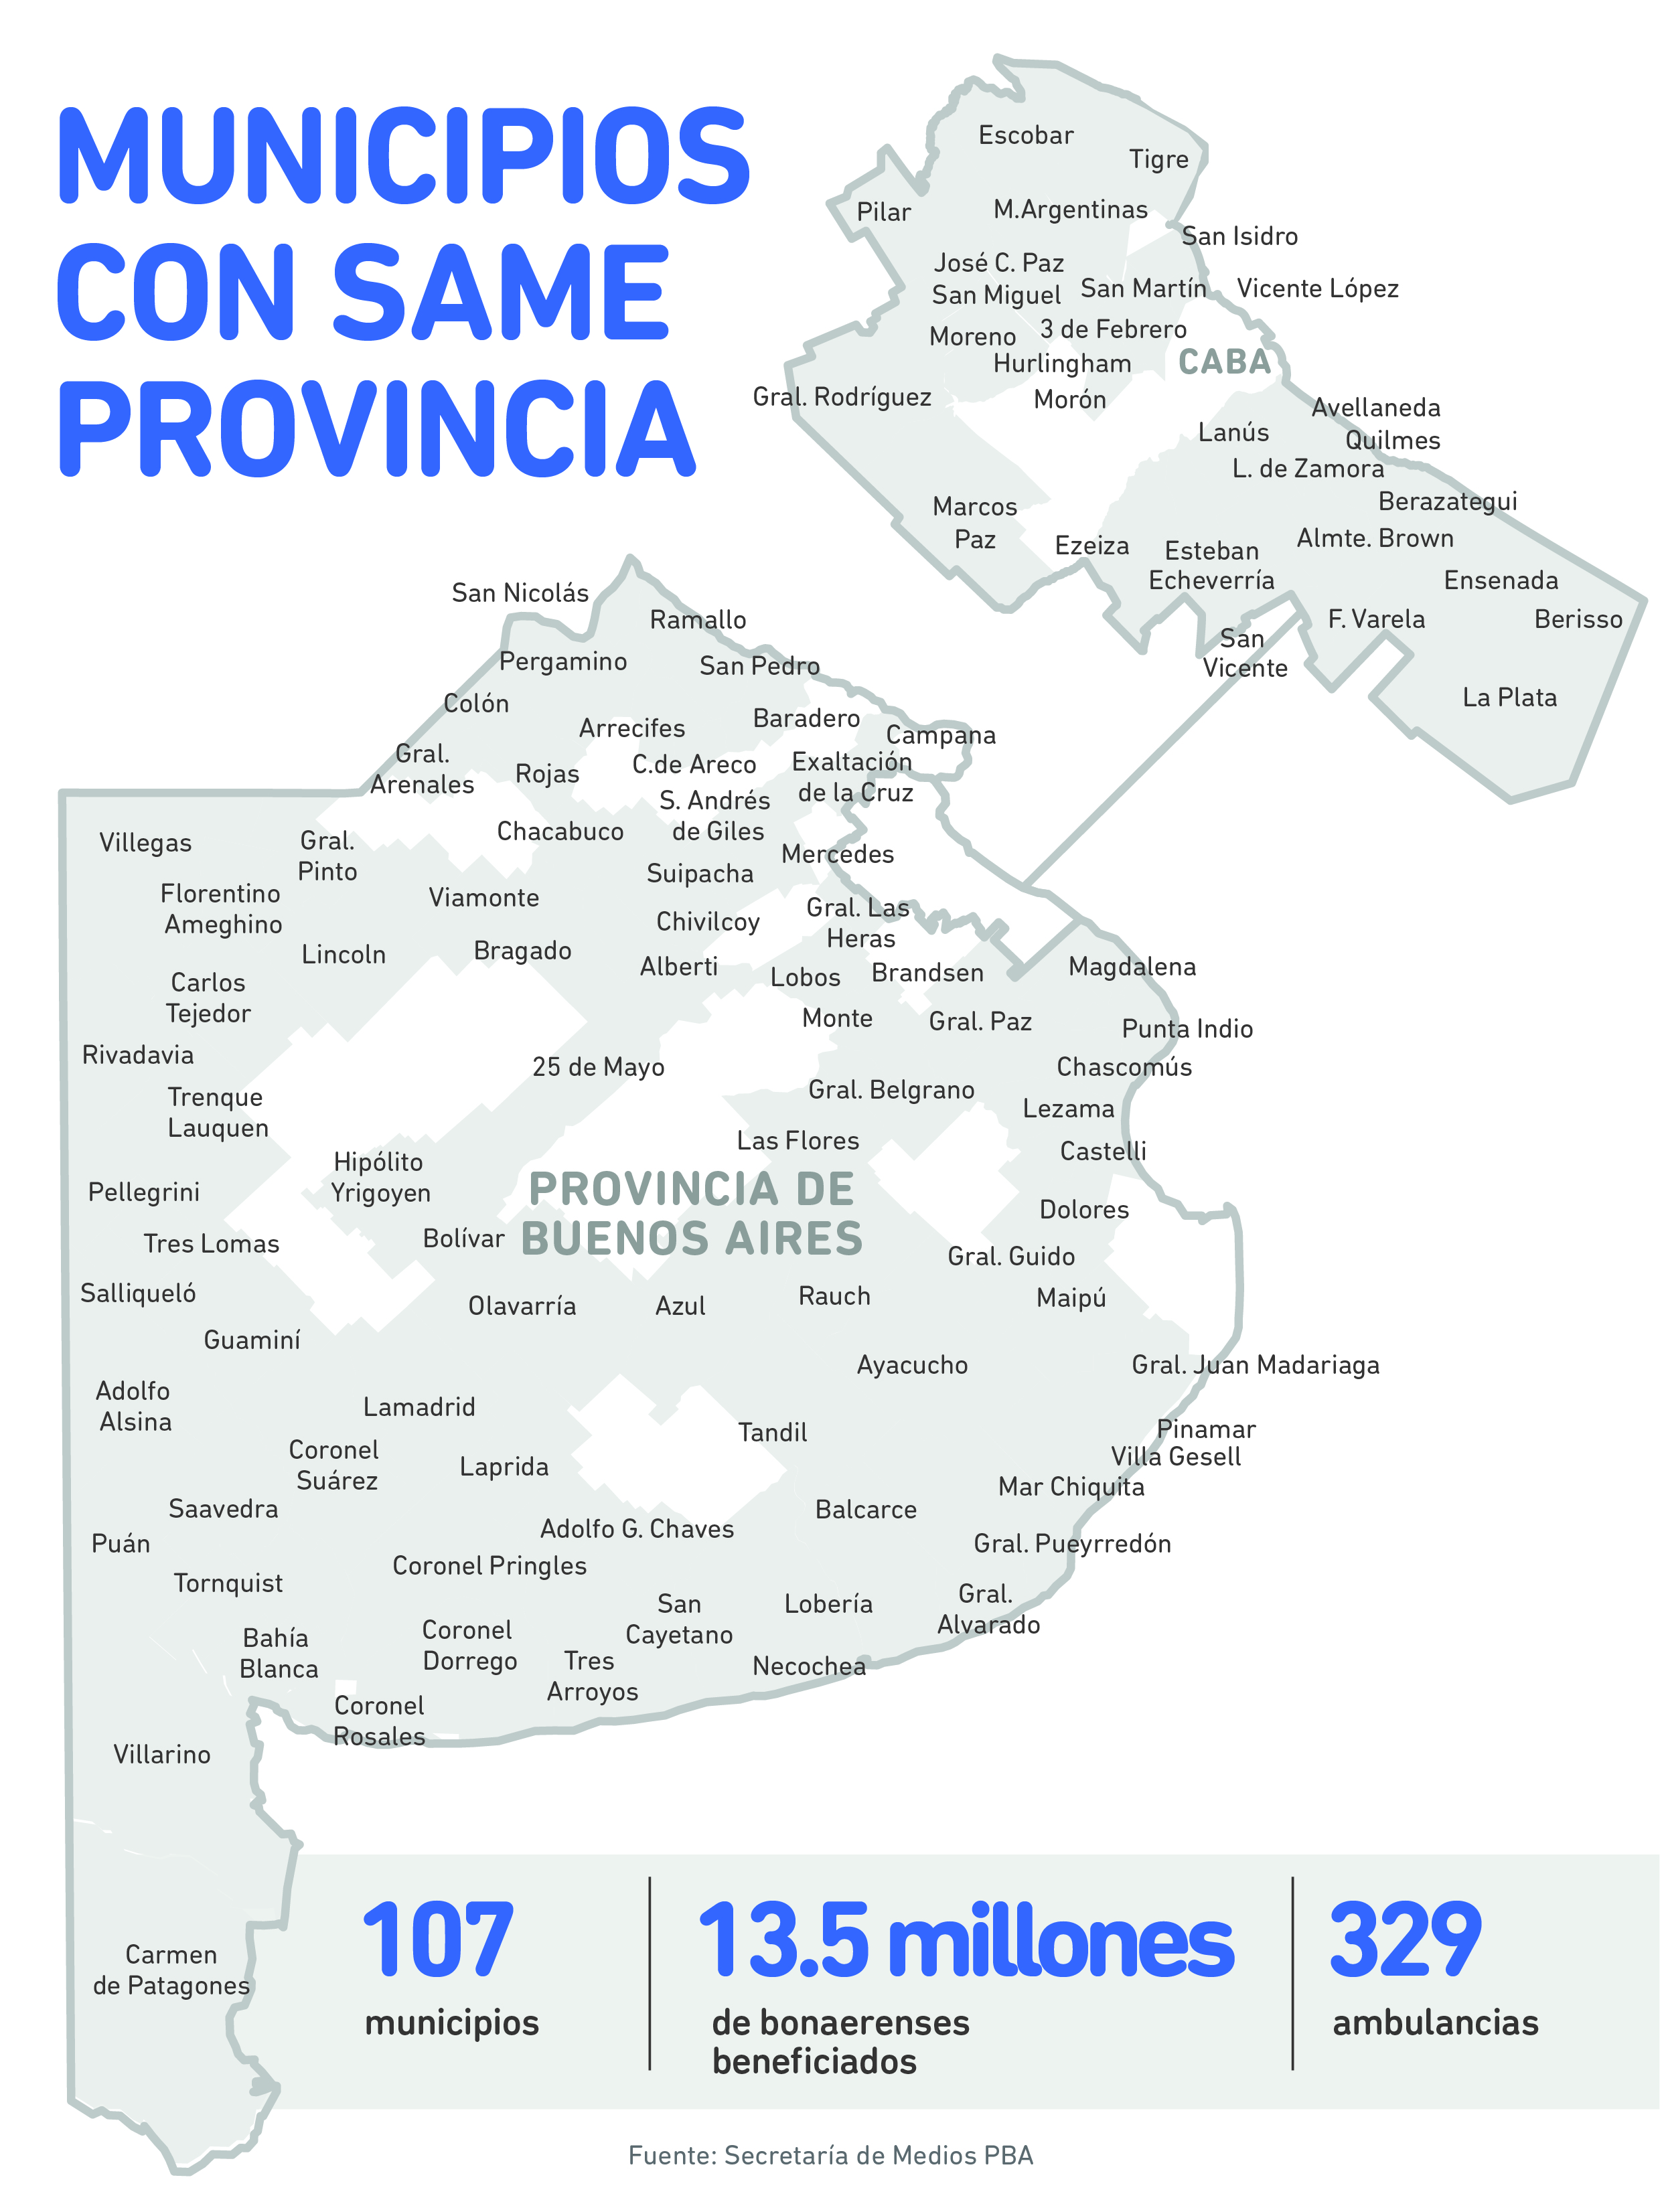 Infografía SAME 107 municipios